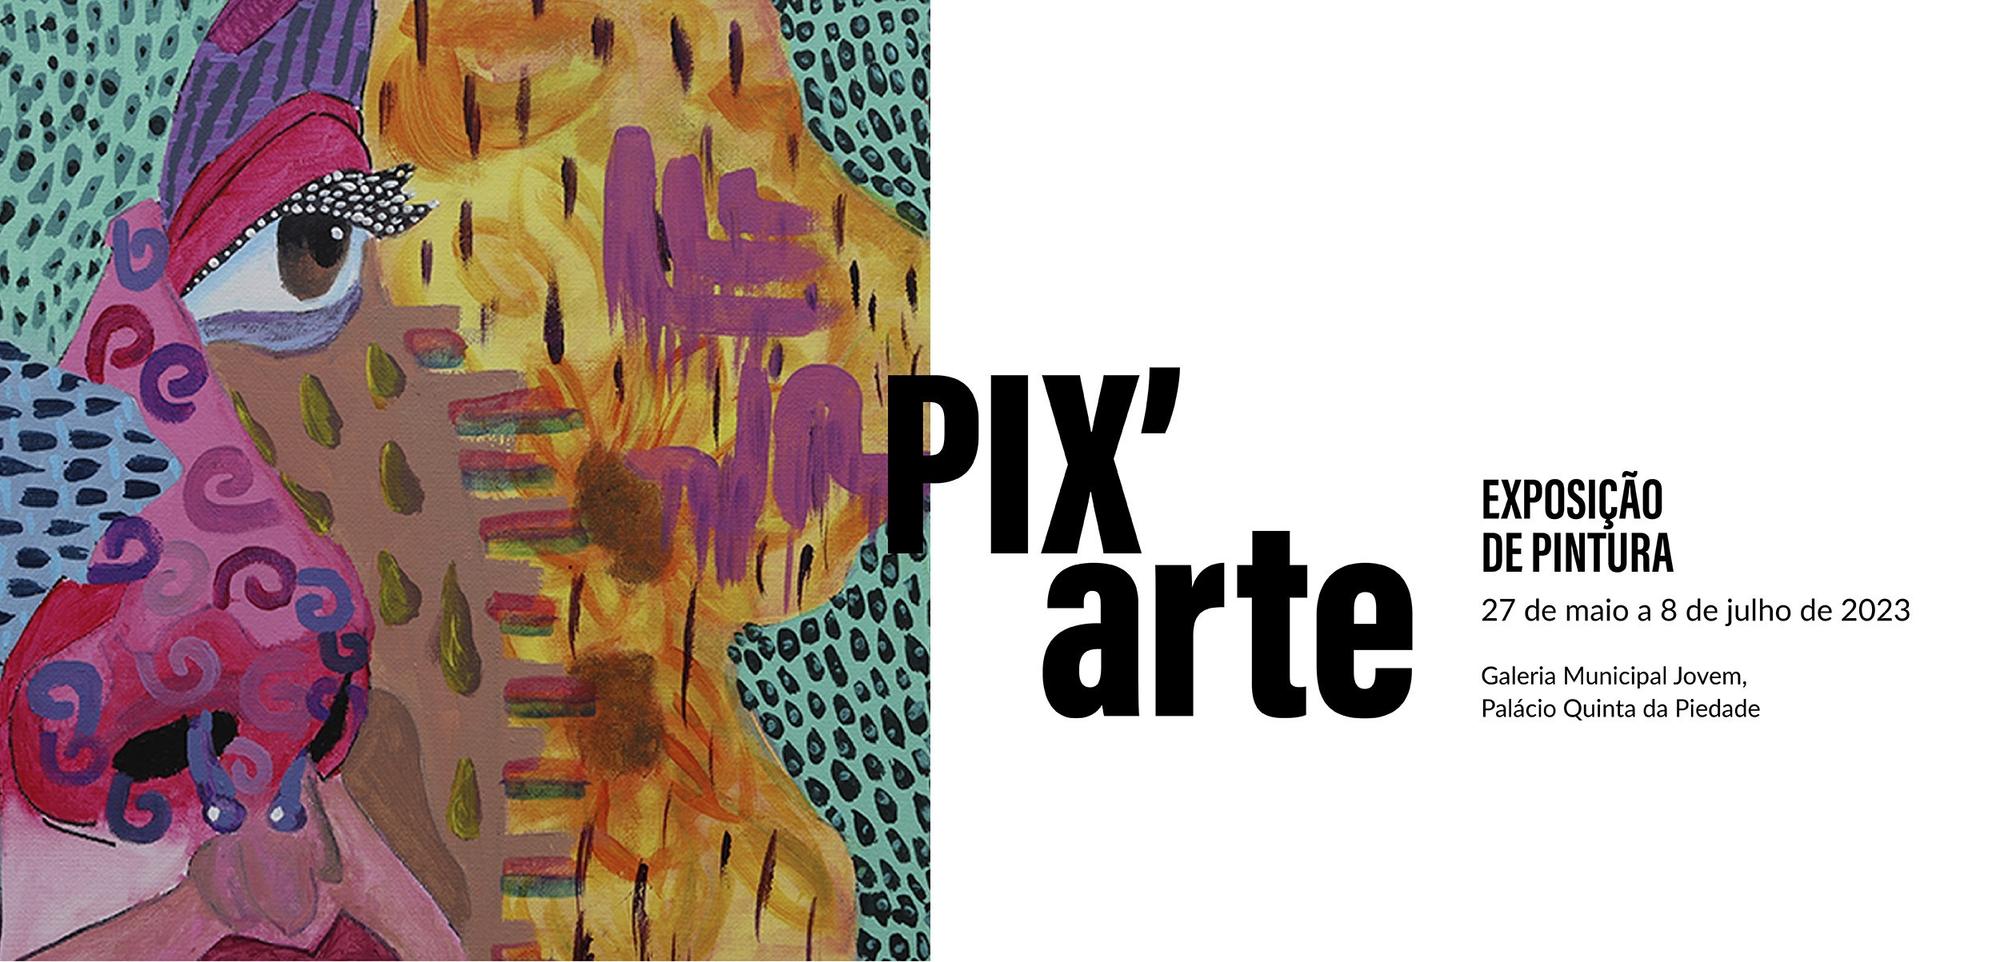 Últimos dias para a visita à exposição  PIX`art na Galeria Municipal Jovem na Quinta da Piedade